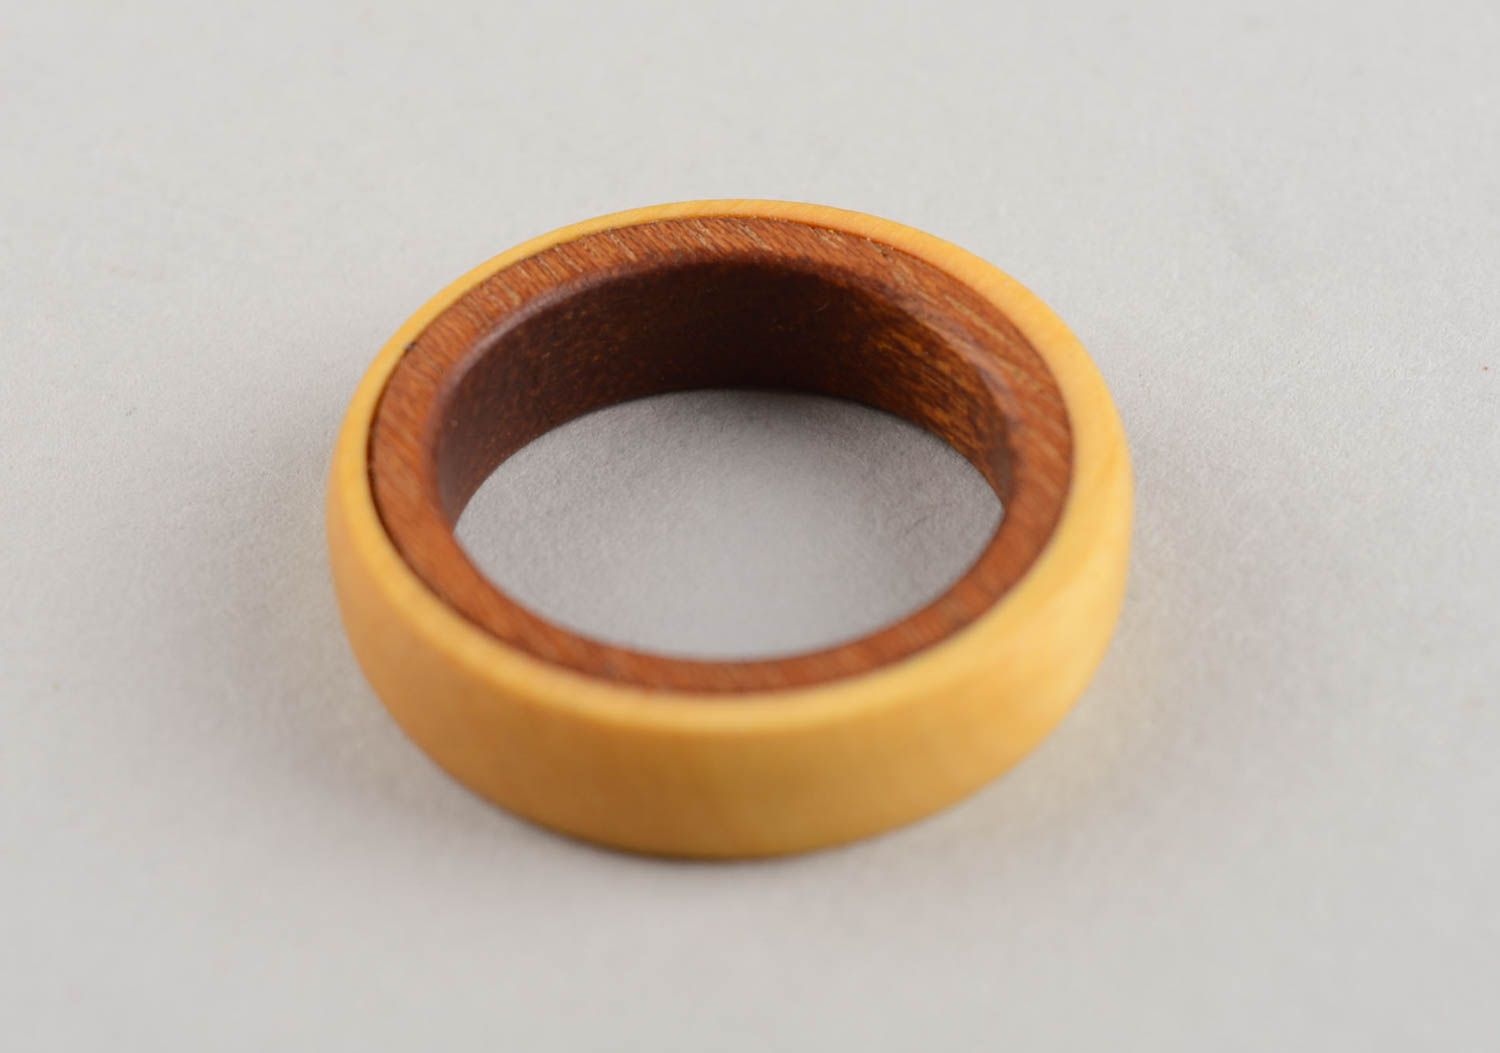 Уникальное необычное деревянное кольцо в эко стиле для мужчин и женщин хэнд мэйд фото 4